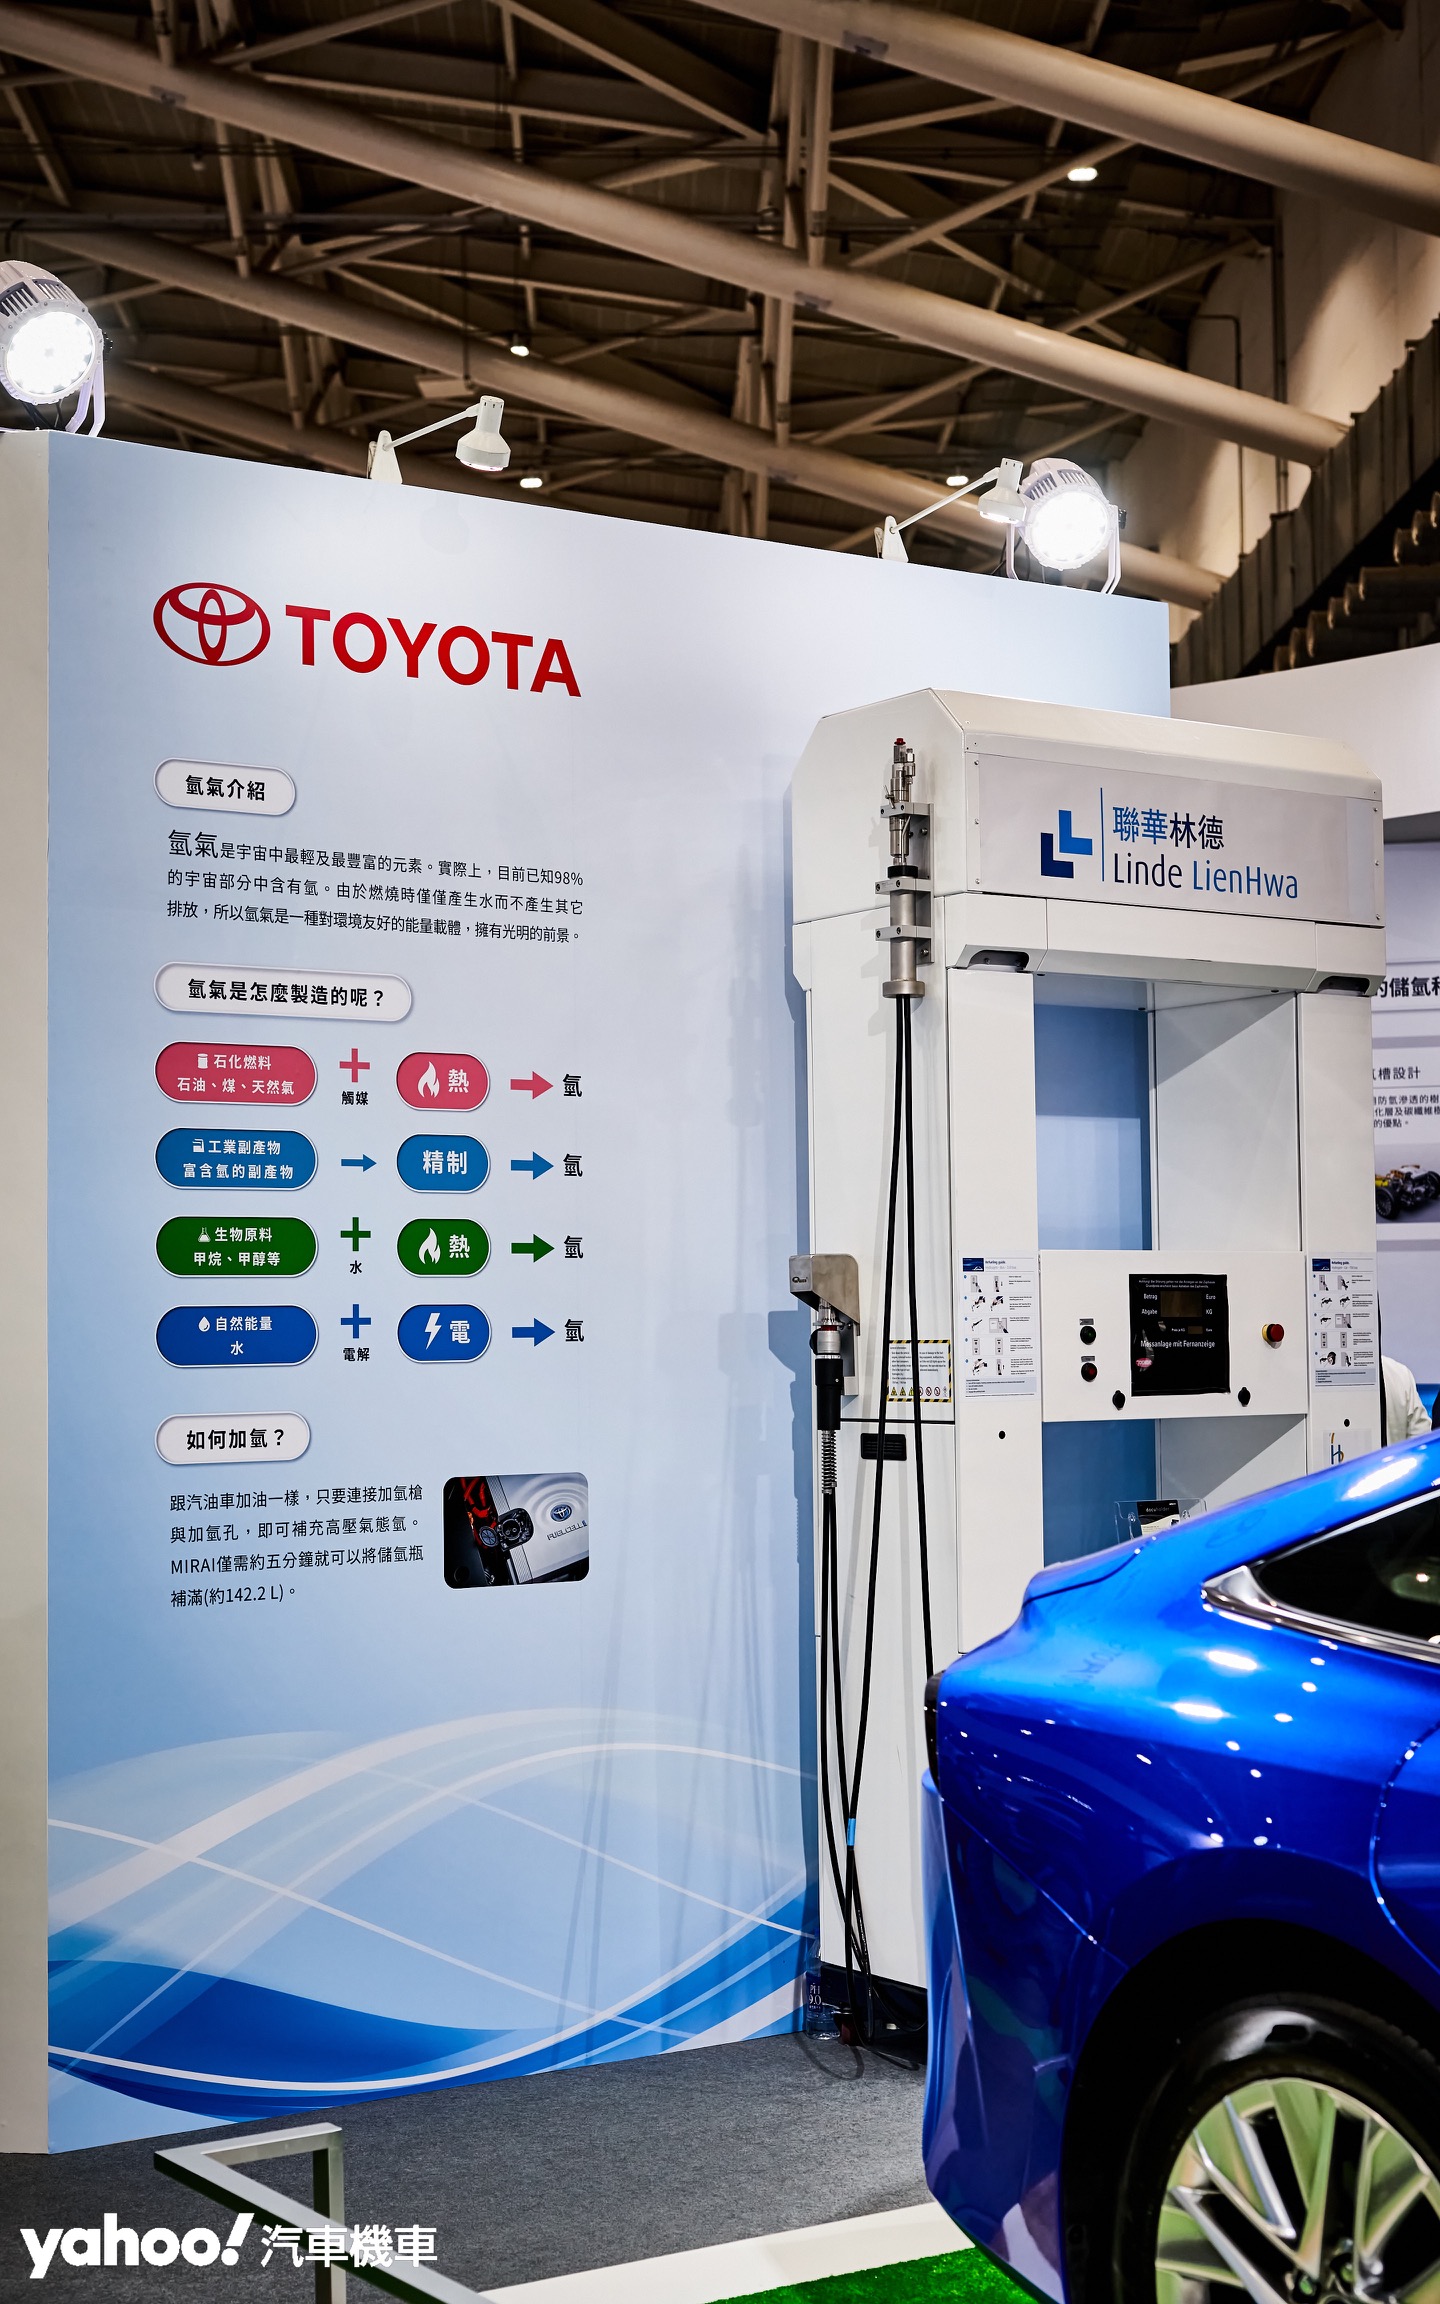 由工業氣體製造廠聯華林德需求引進的Toyota Mirai預期將能帶動產業的升級和汽車市場的更多可能。